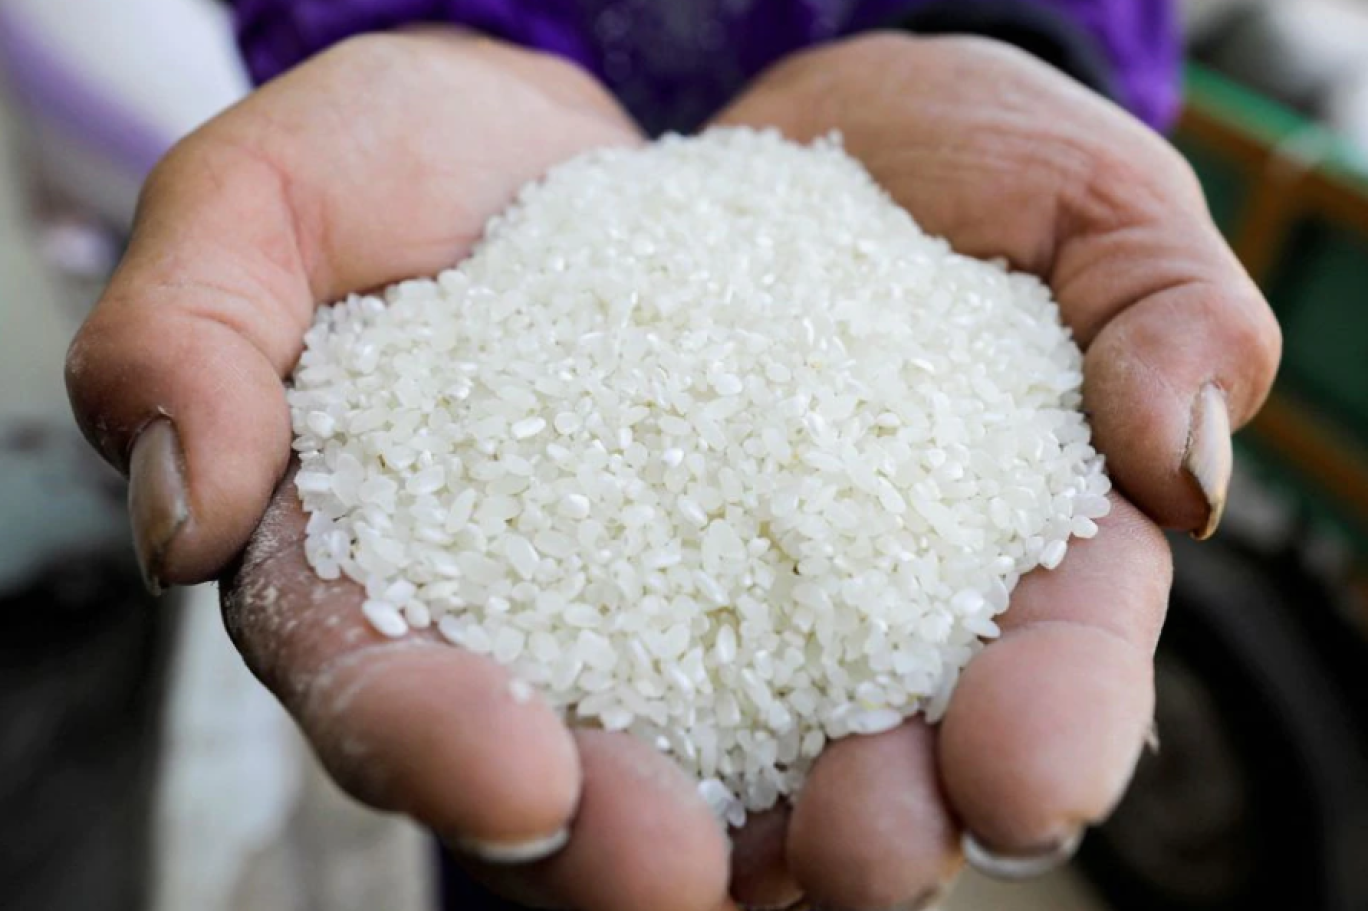 النيابة العامة تُسند 4 تهم لمدير شركة وزَّعت أرزًا فاسدًا لأردنيين